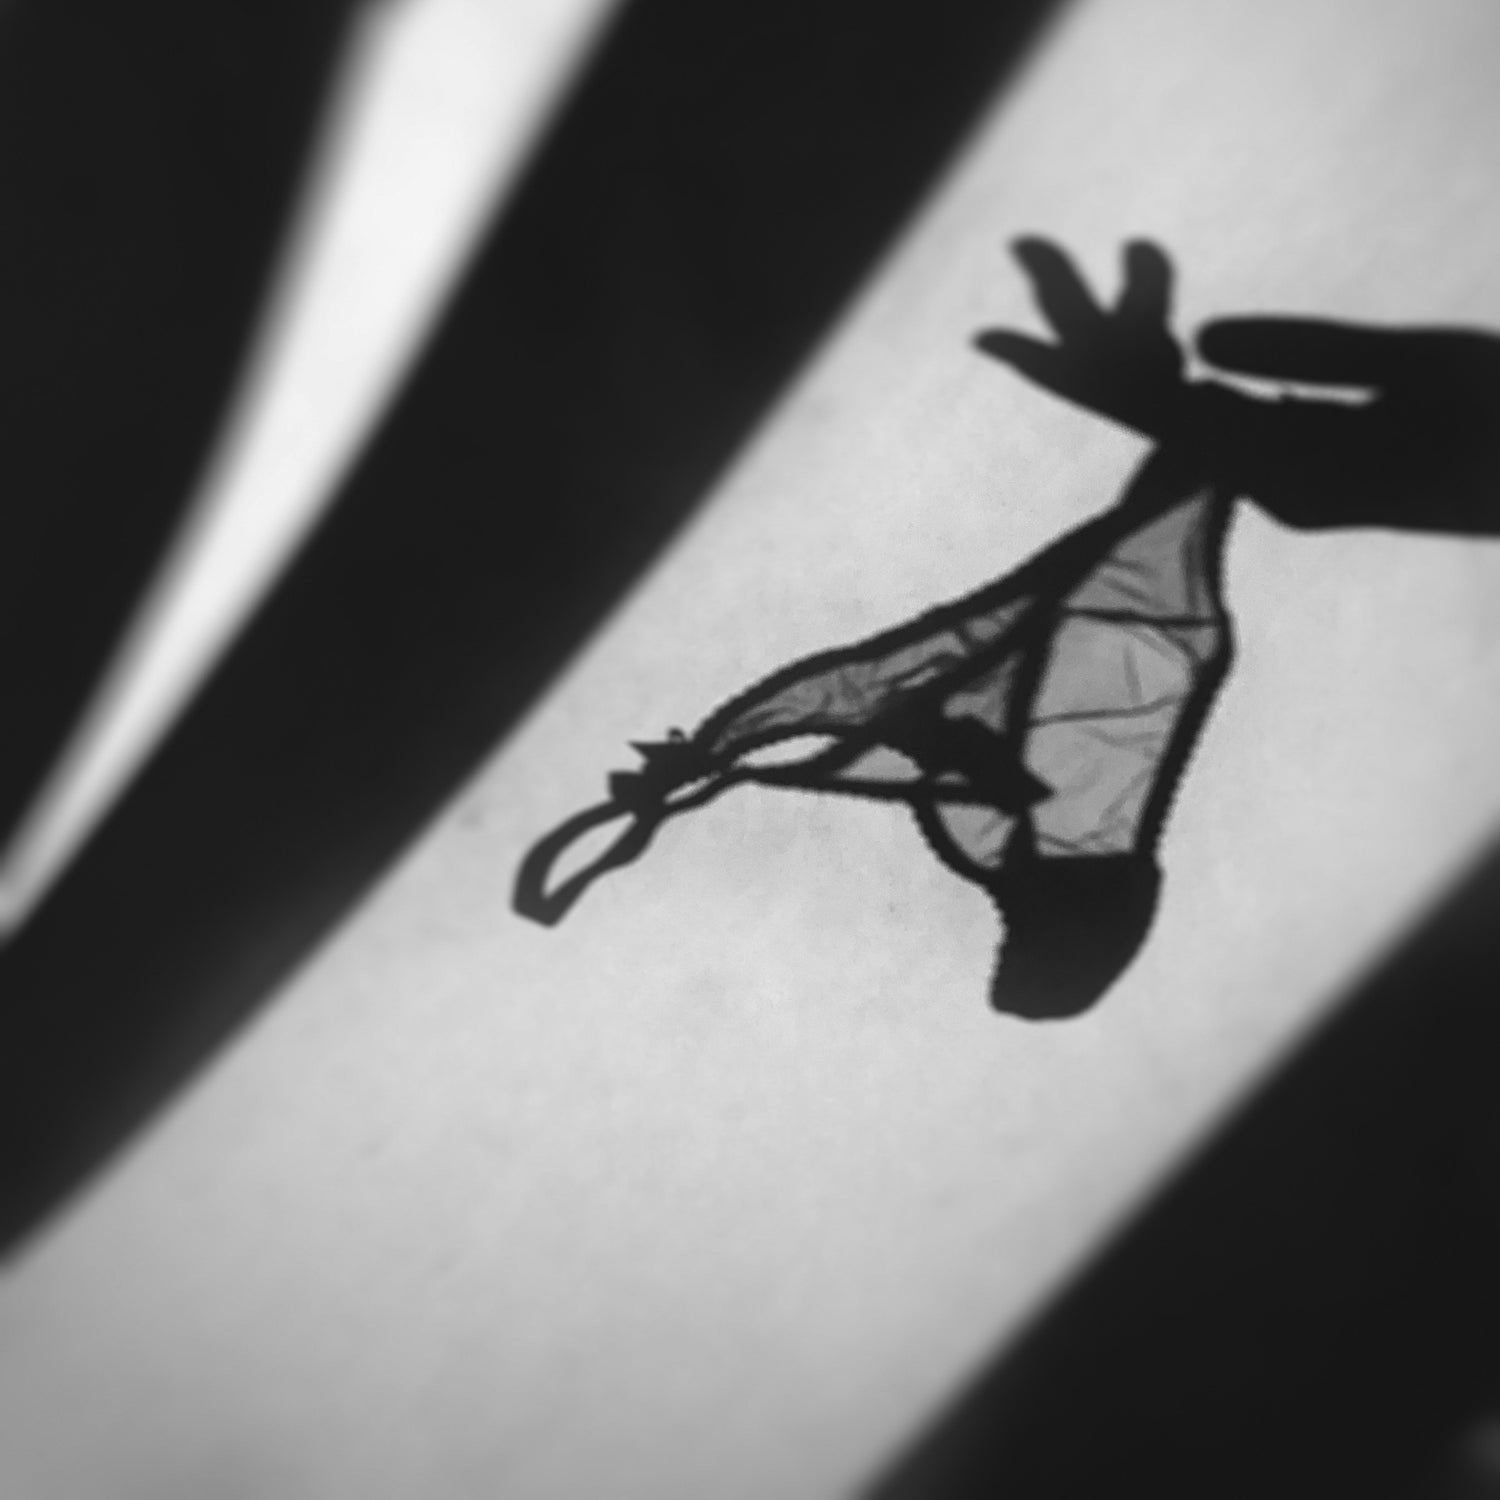 Lavage à la main lingerie Brigitte BARDOT - Entretenir sa lingerie rétro mode